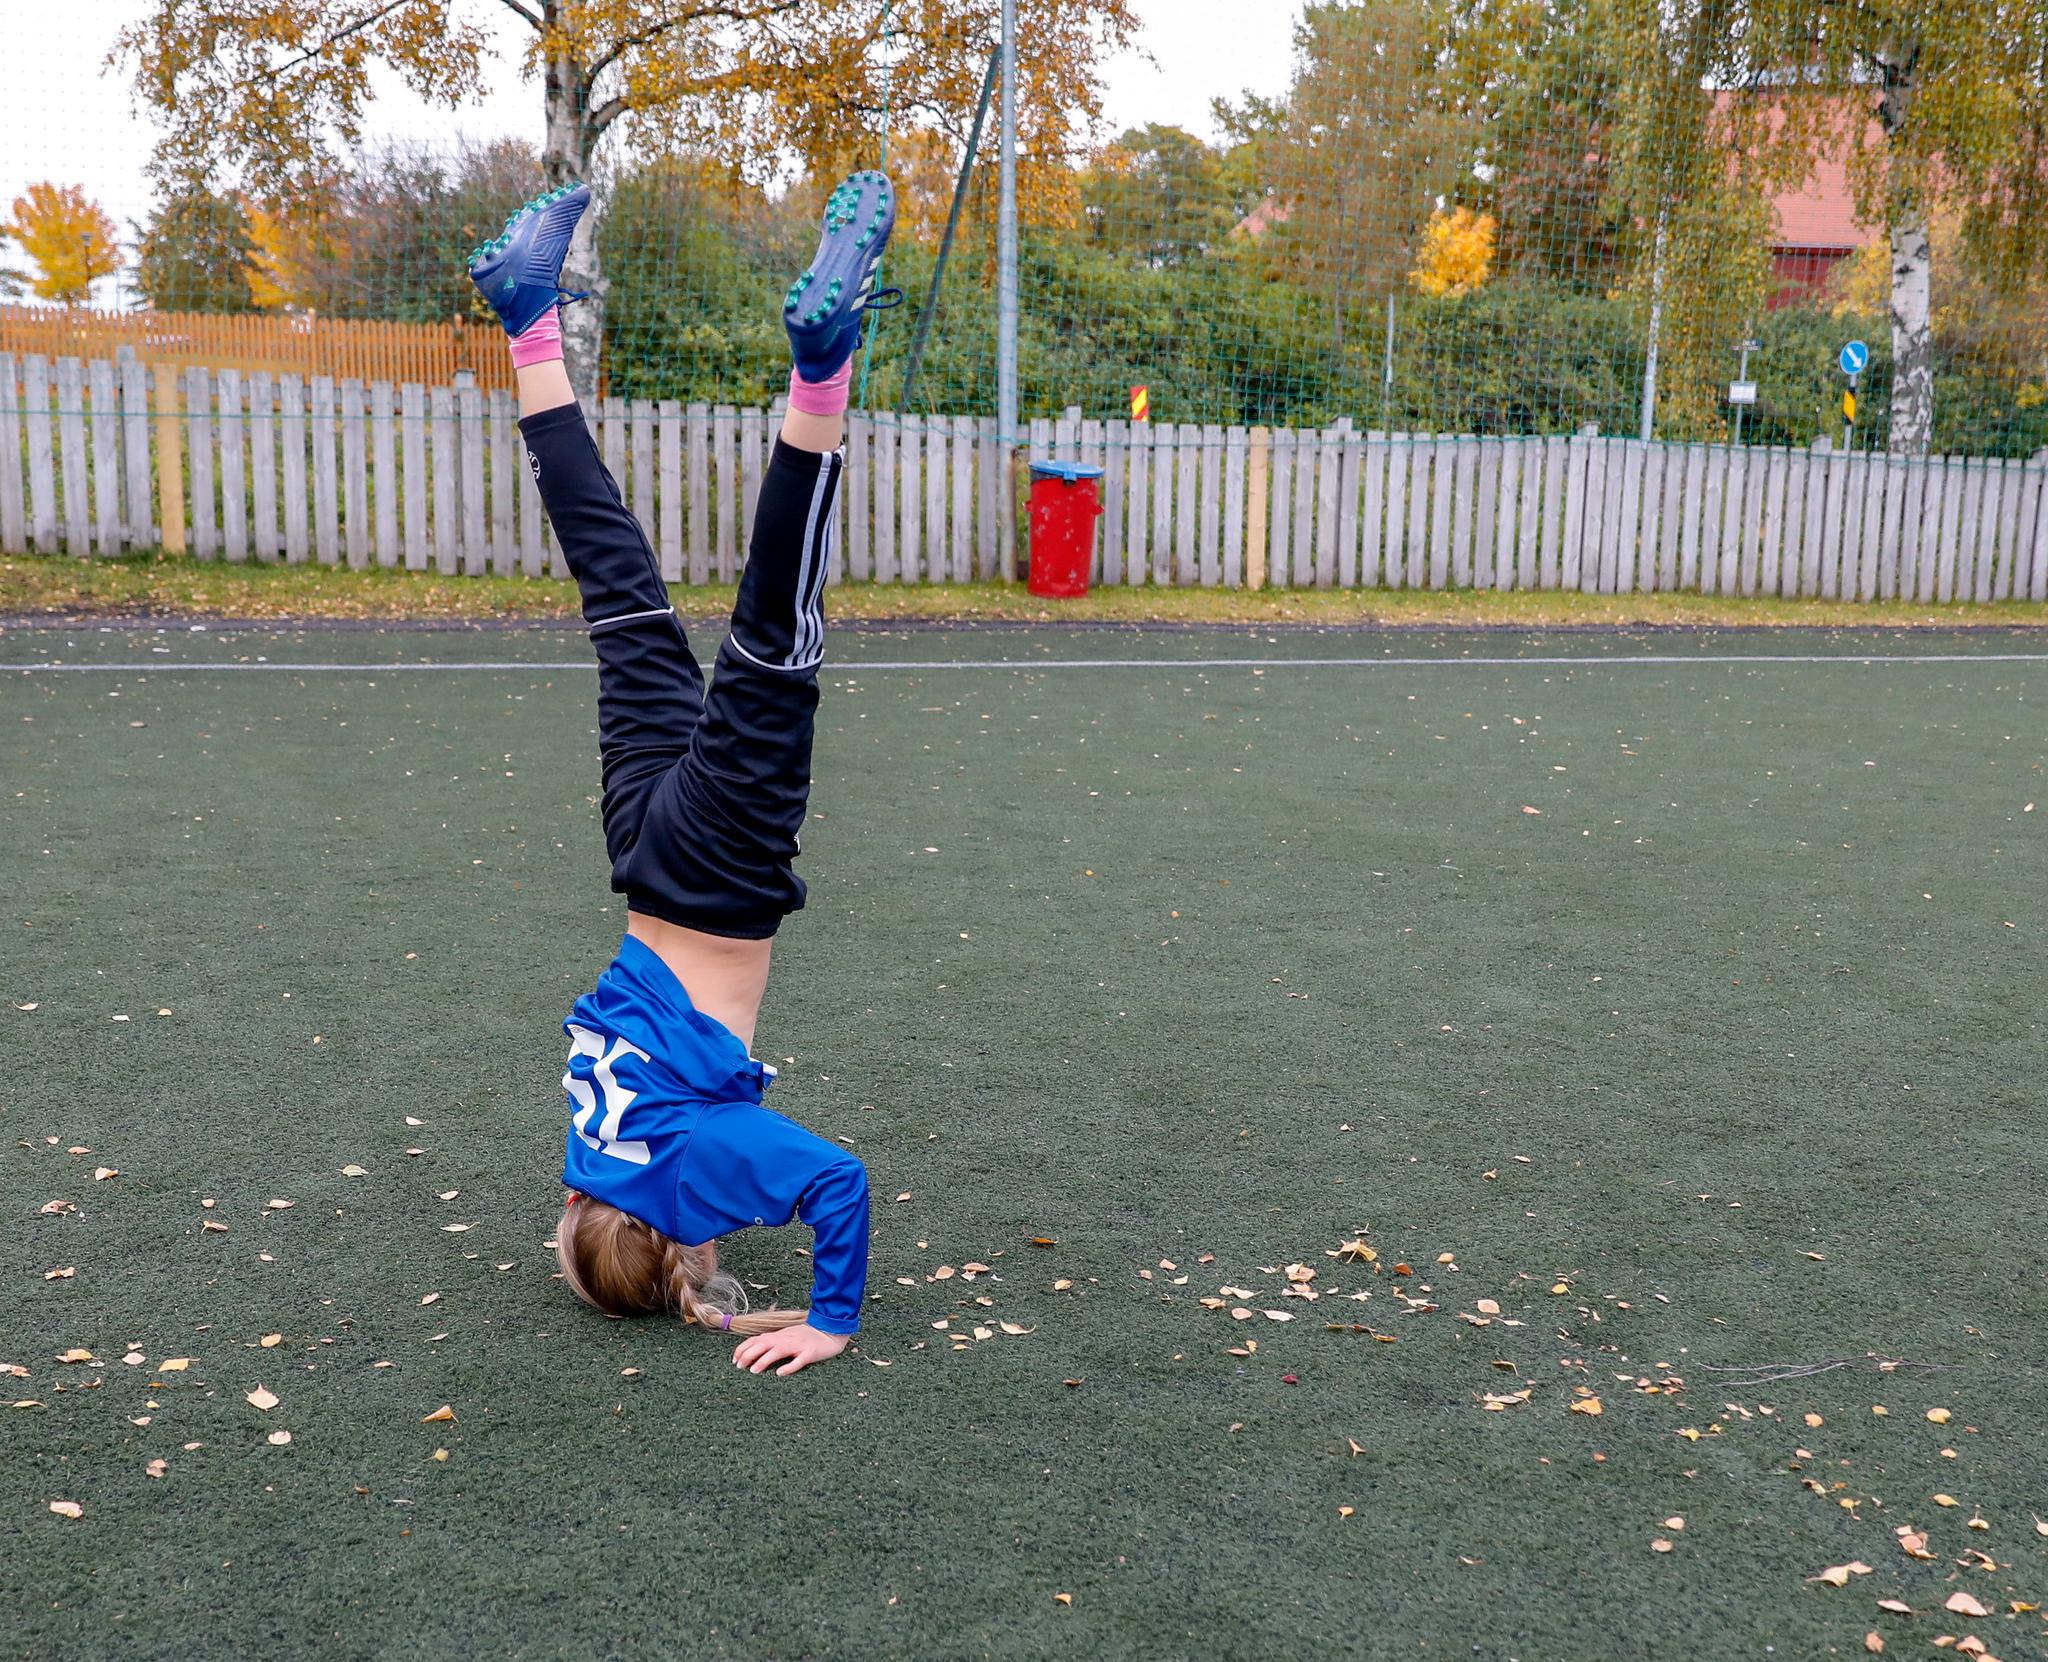 Idrettens økende omfang reflekterer samfunnets gjennomorganisering av barns fritid og tidlig innsats, skriver to forskere ved Norges idrettshøgskole.